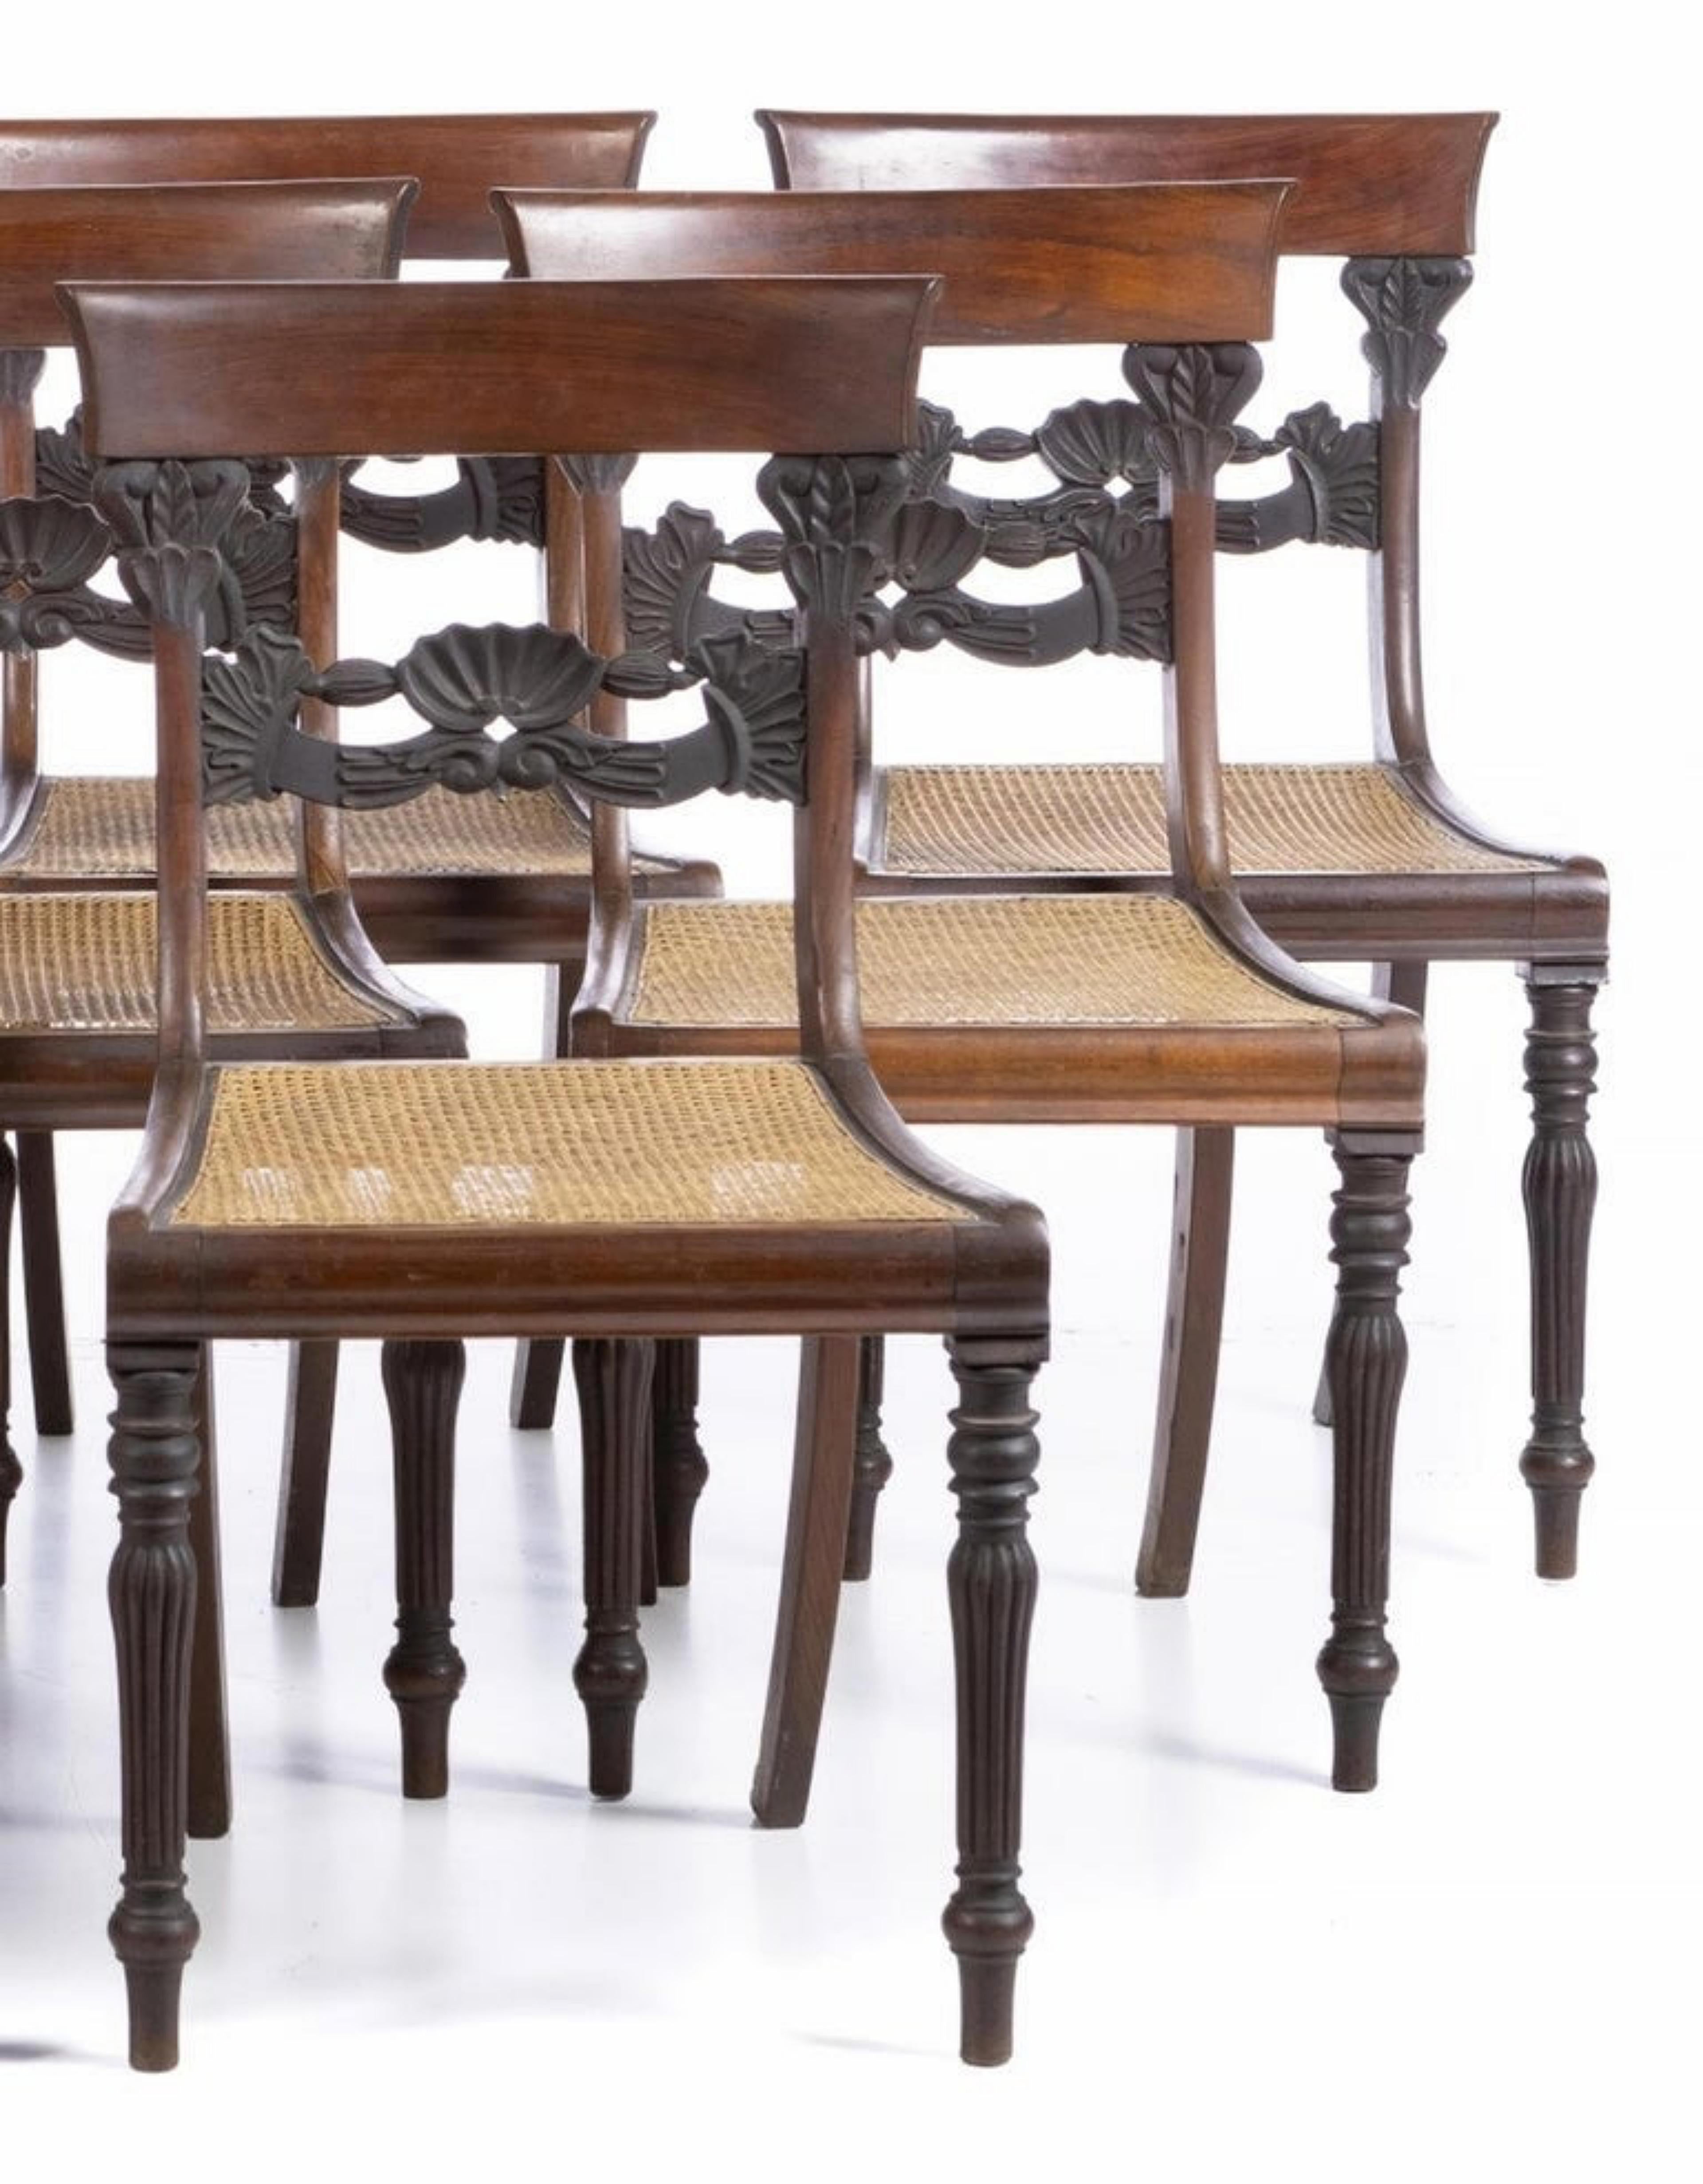 Satz von 9 Stühlen
Portugiesisch, 19. Jahrhundert, aus Ölholz, Sitzfläche aus Rohr, hohle Rückenlehne. 
Kleine Mängel und Gebrauchsspuren. 
Abmessungen: 88 x 47 x 43 cm.